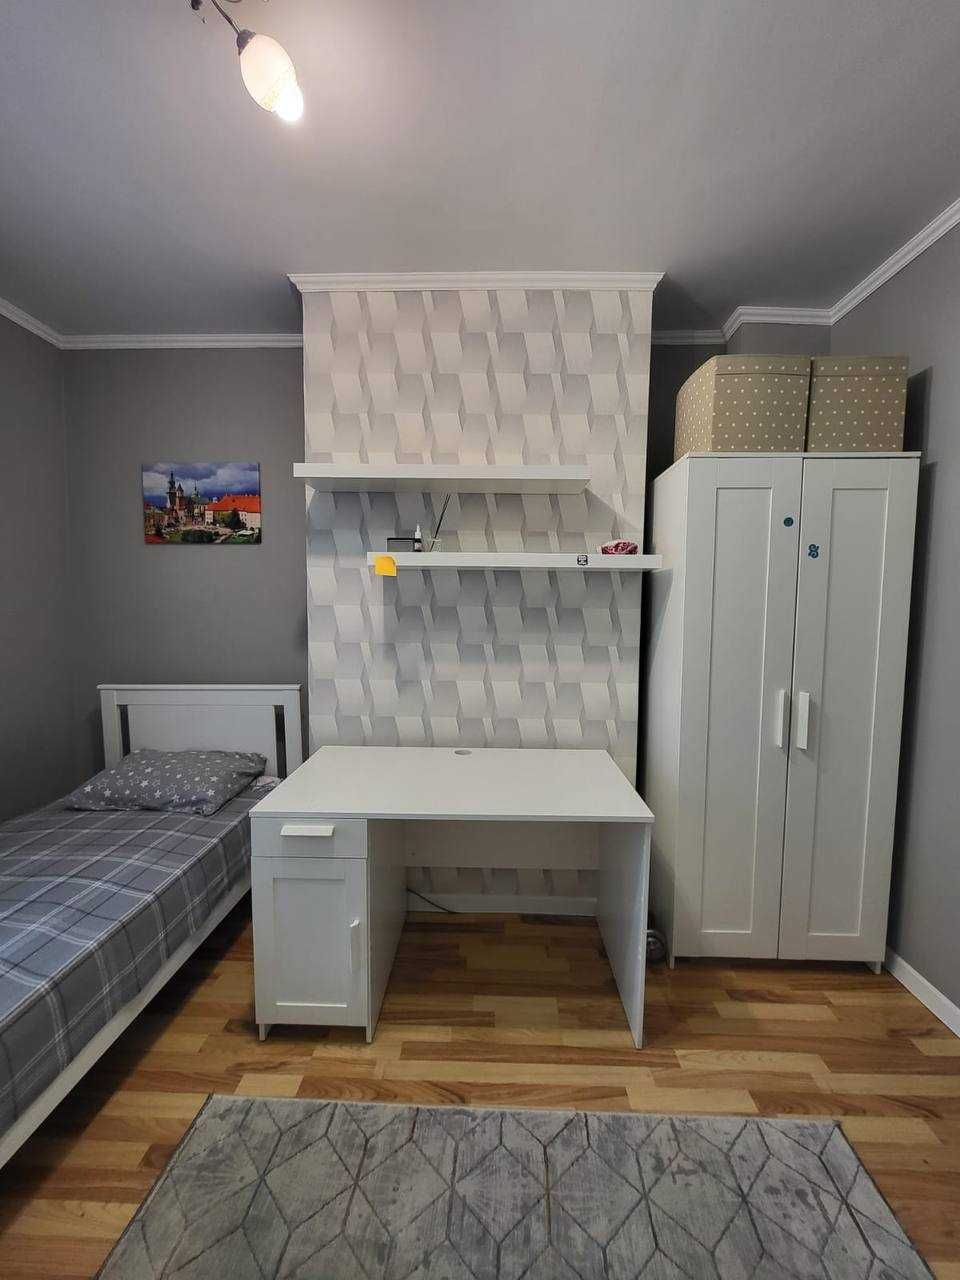 Мебель Икеа - шкаф, кровать, письменный стол, полки.